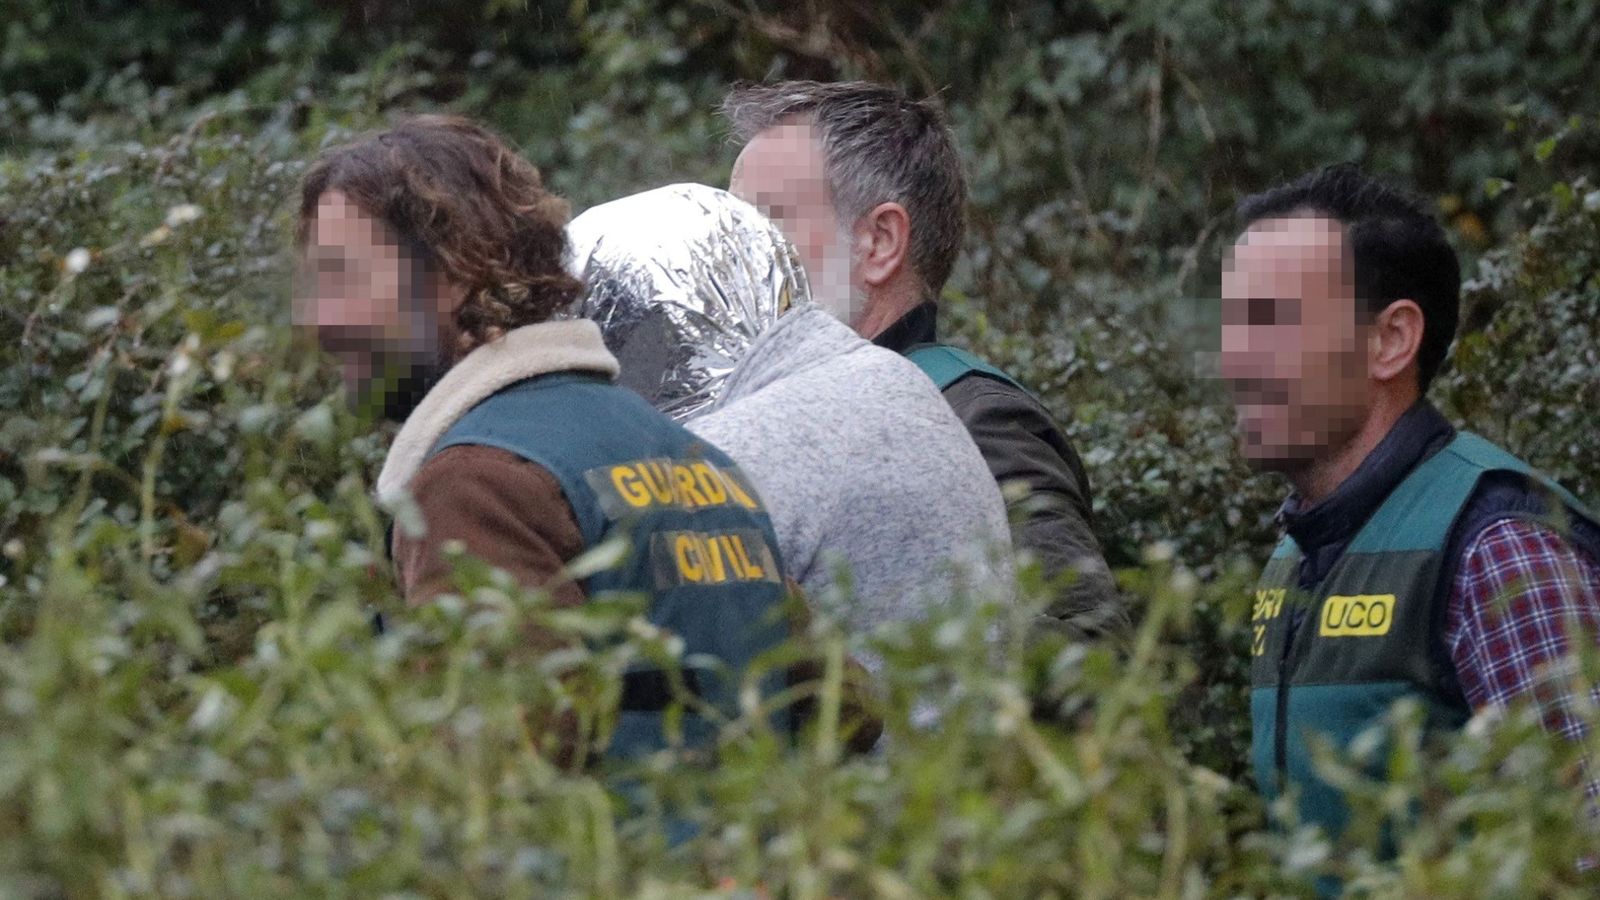 Foto: José Enrique Abuín, el Chicle, trasladado por la Guardia Civil el pasado 31 de diciembre, cuando los agentes encontraron el cadáver de Diana Quer. (EFE)